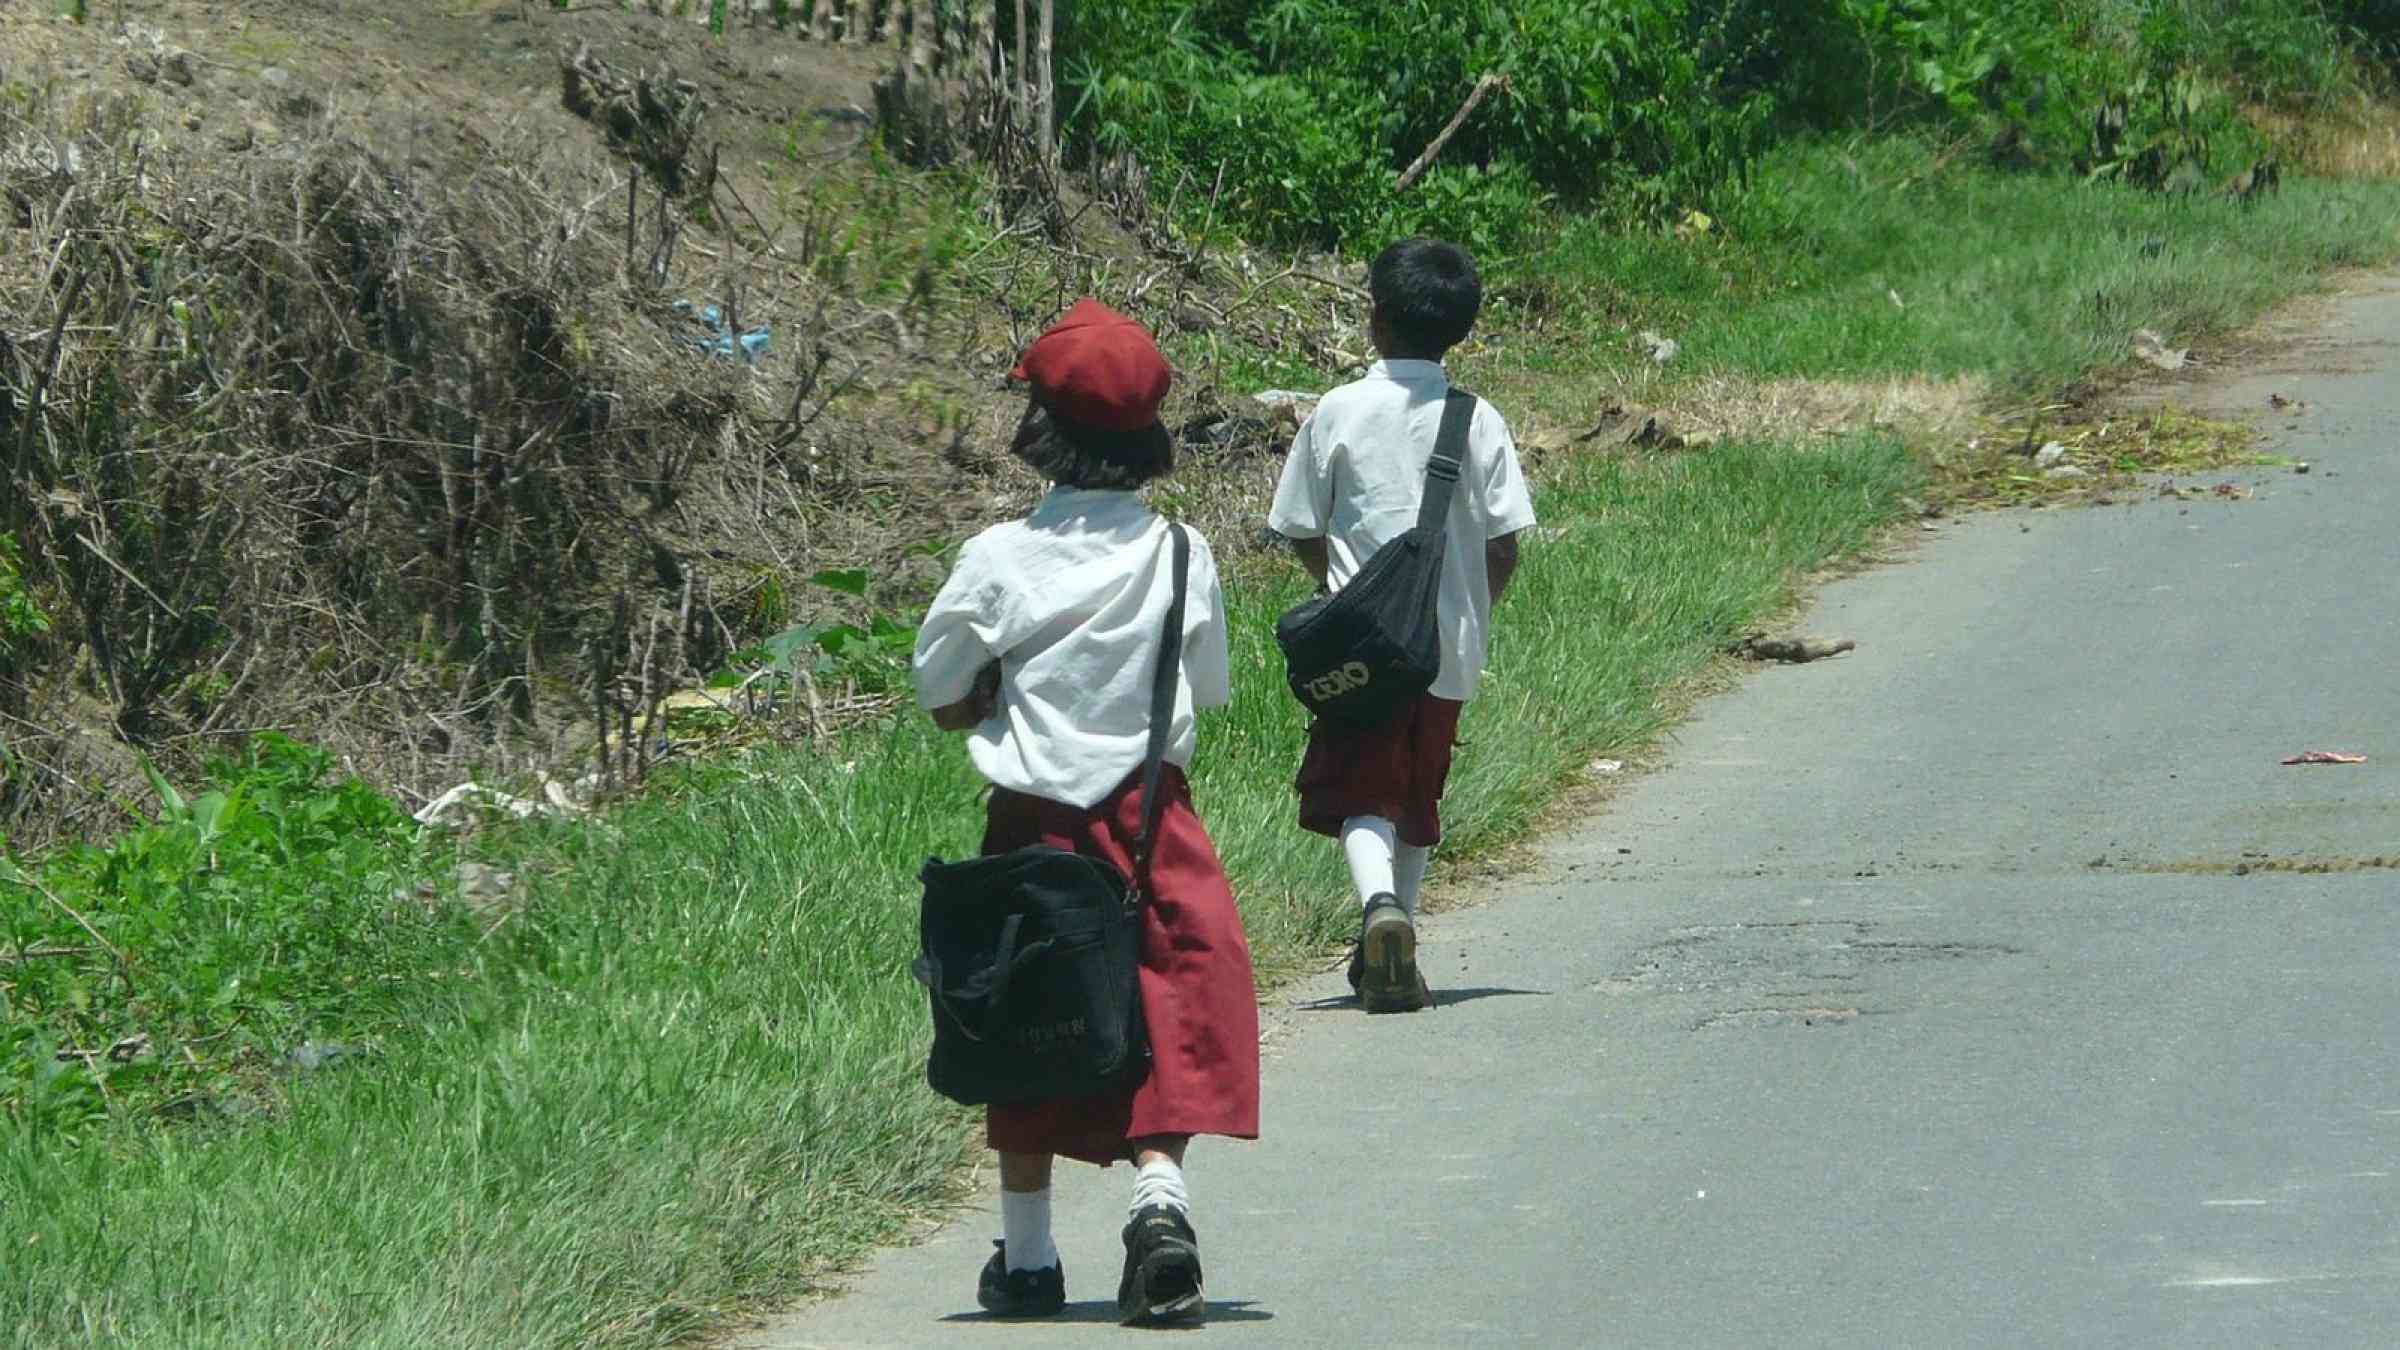 Children walking to school in Indonesia